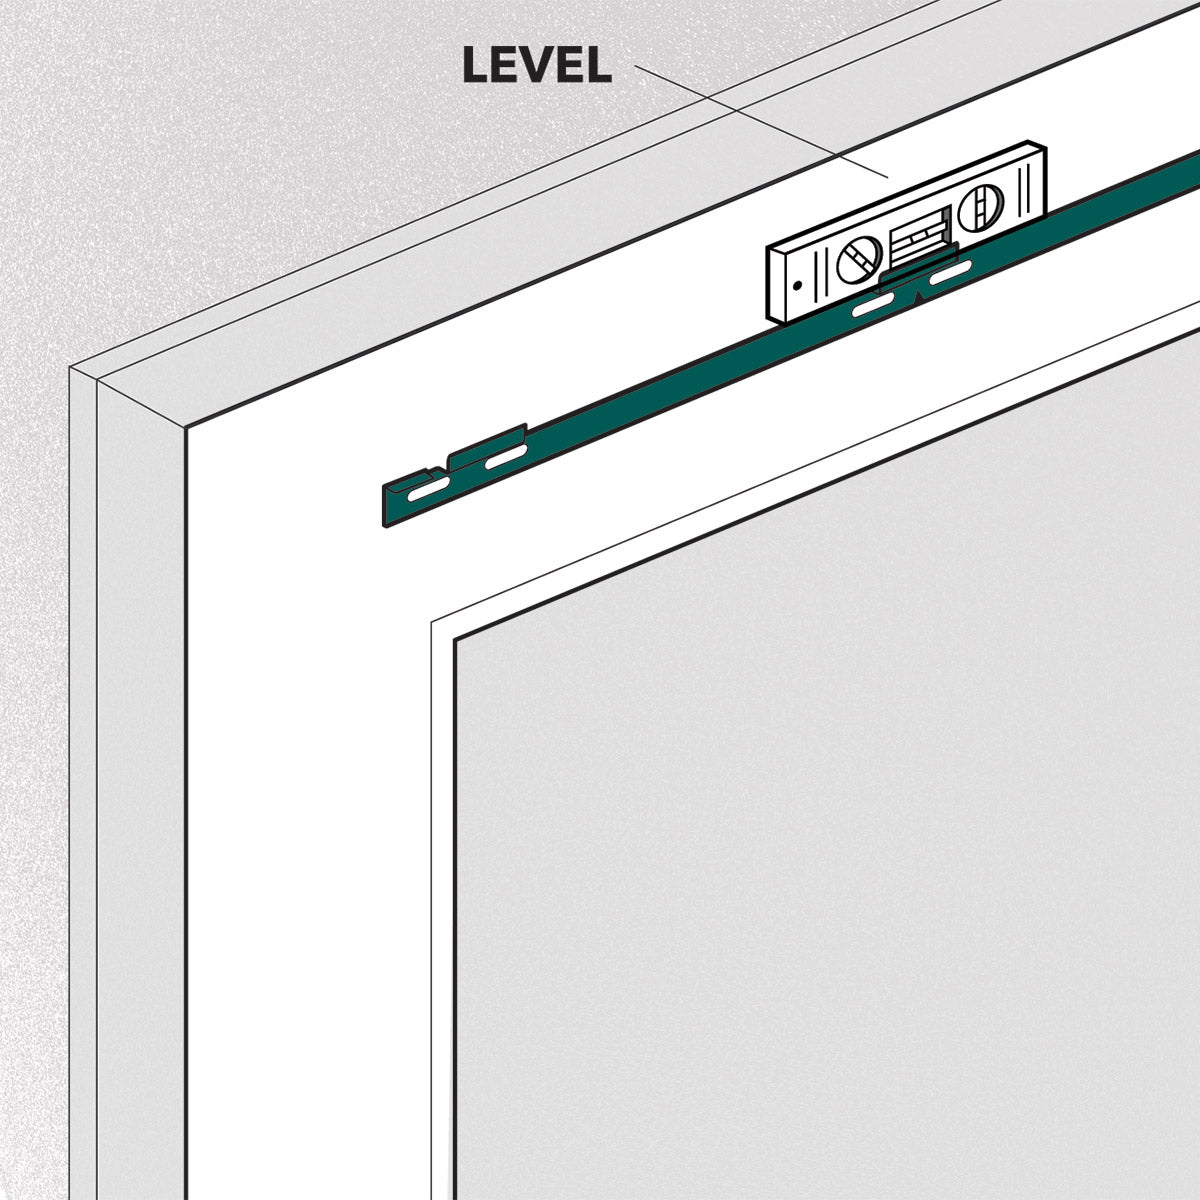 ODL Add On Blinds for Flush Frame Doors - 27" x 66"